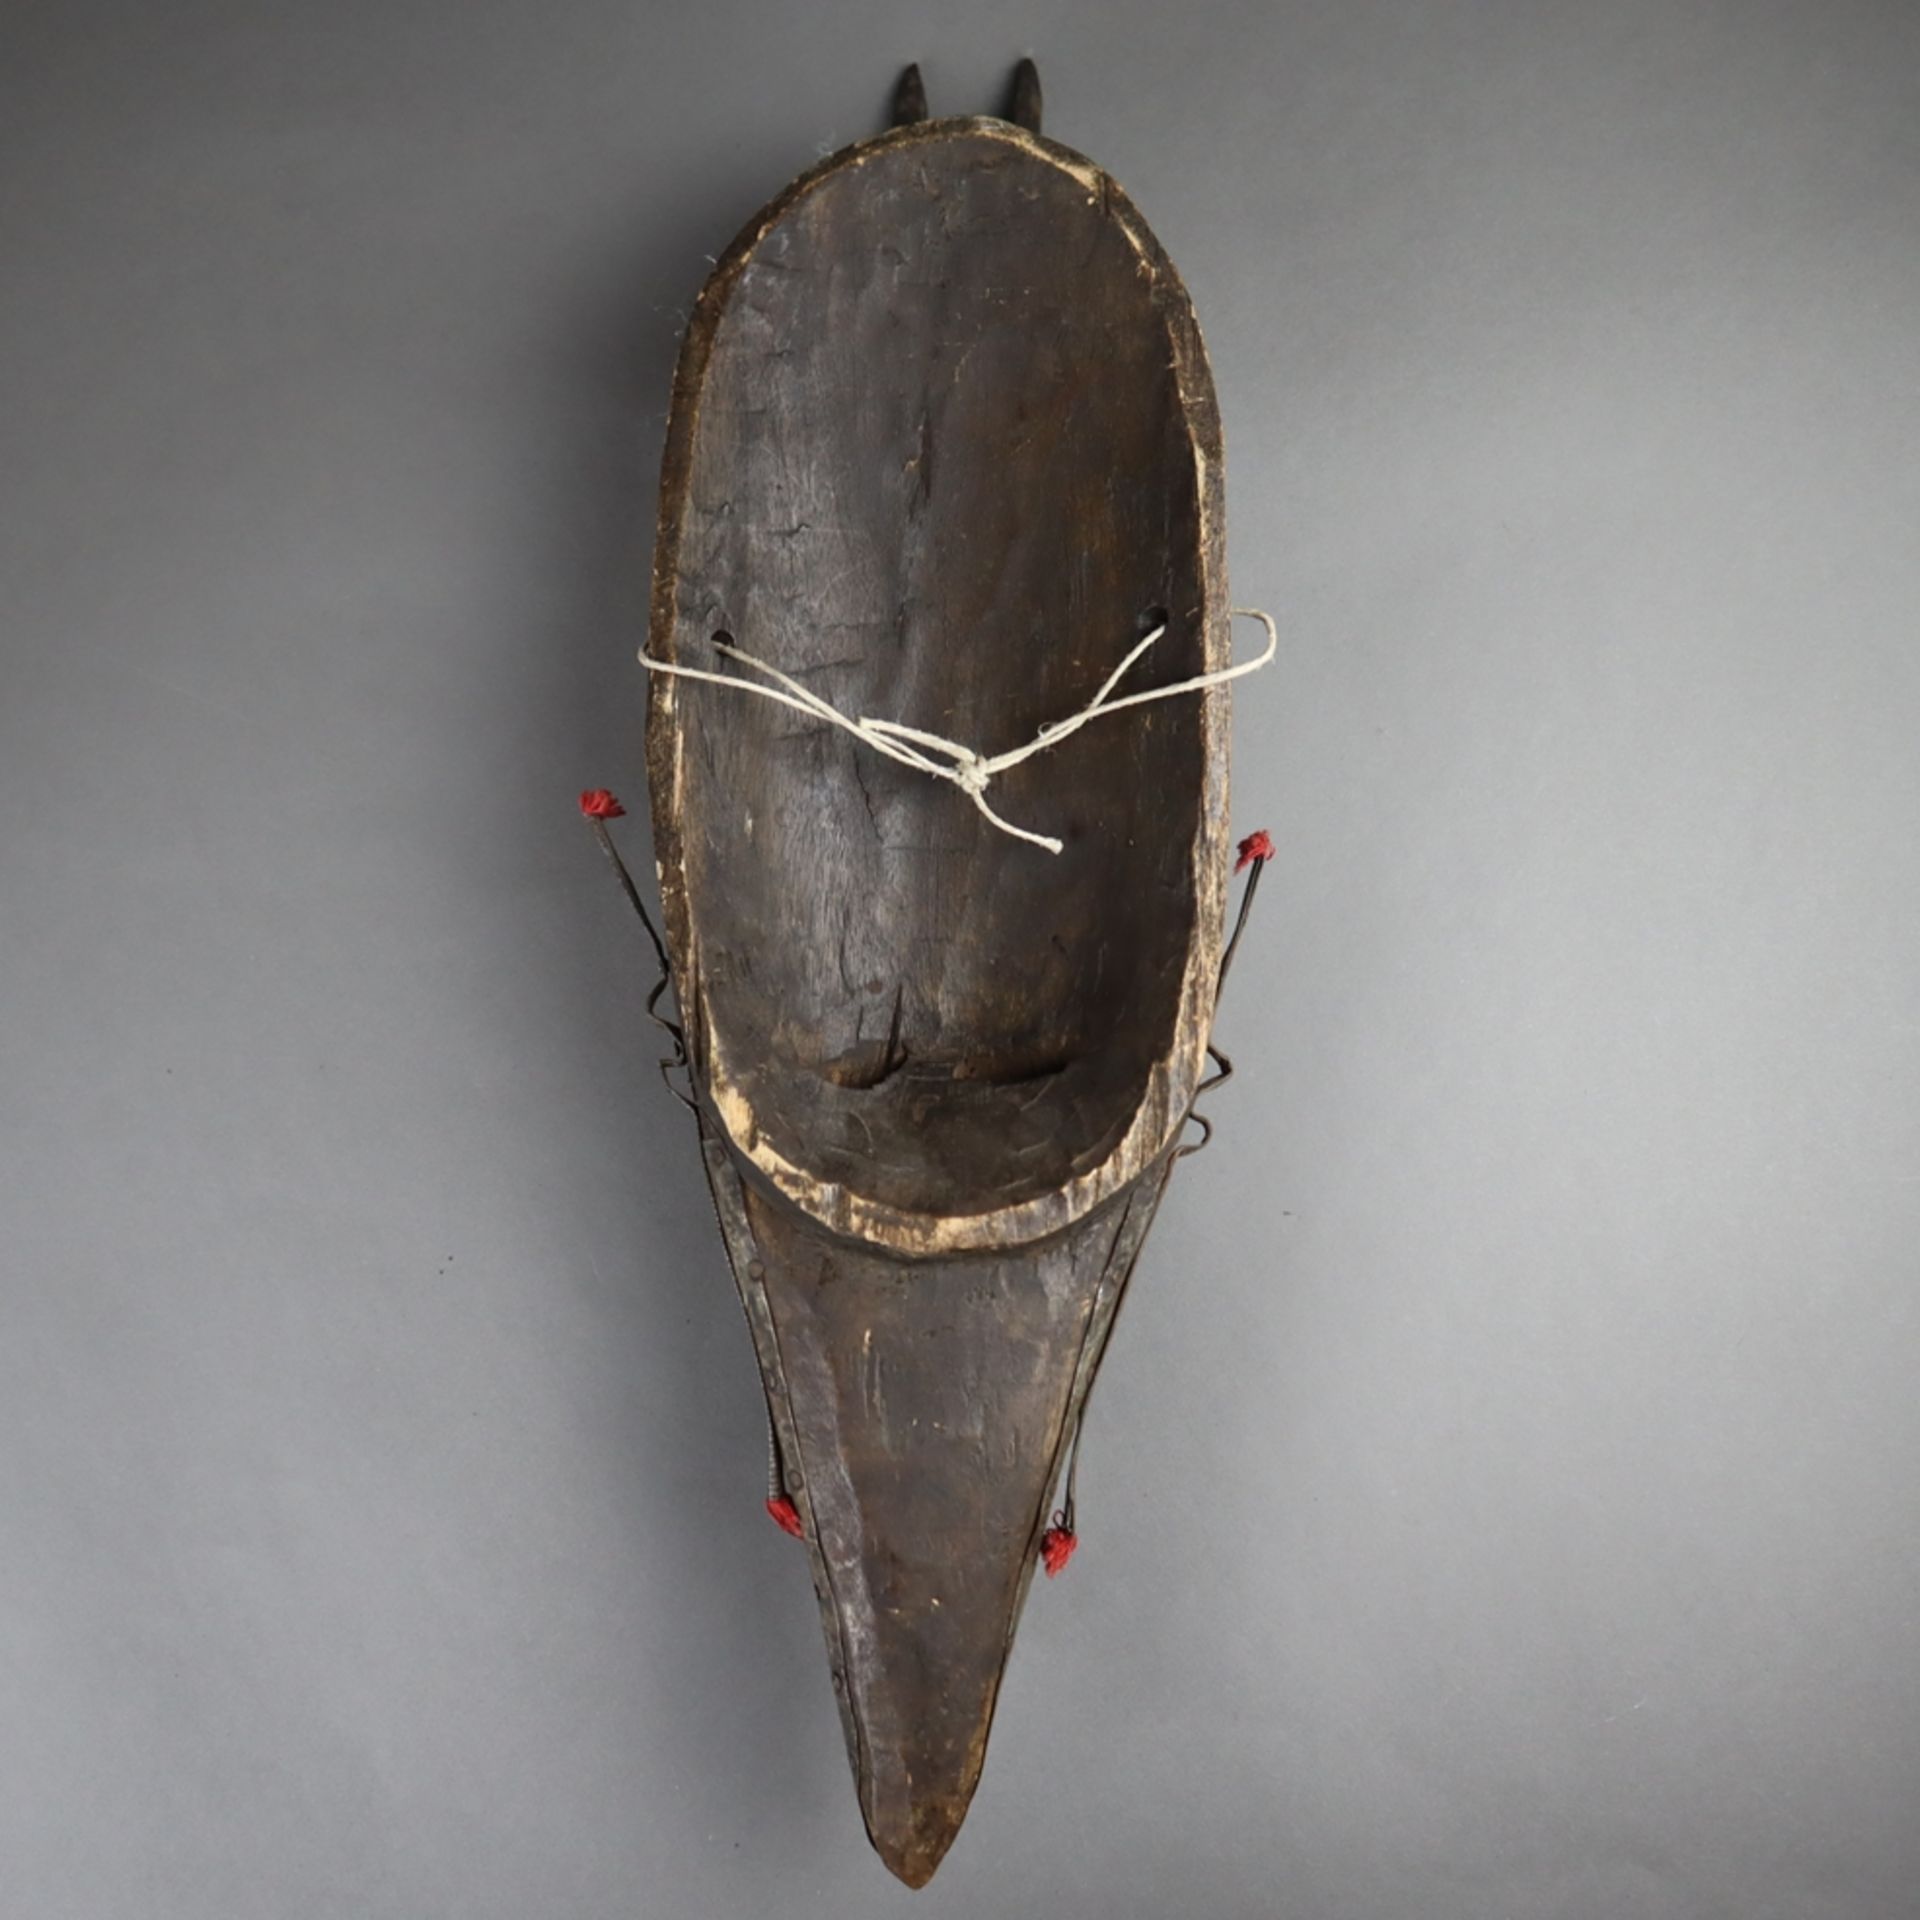 Metallbeschlagene Maske - Bambara/Marka, Mali, Holz/Metallbeschlag/Wolle, schma - Bild 6 aus 6